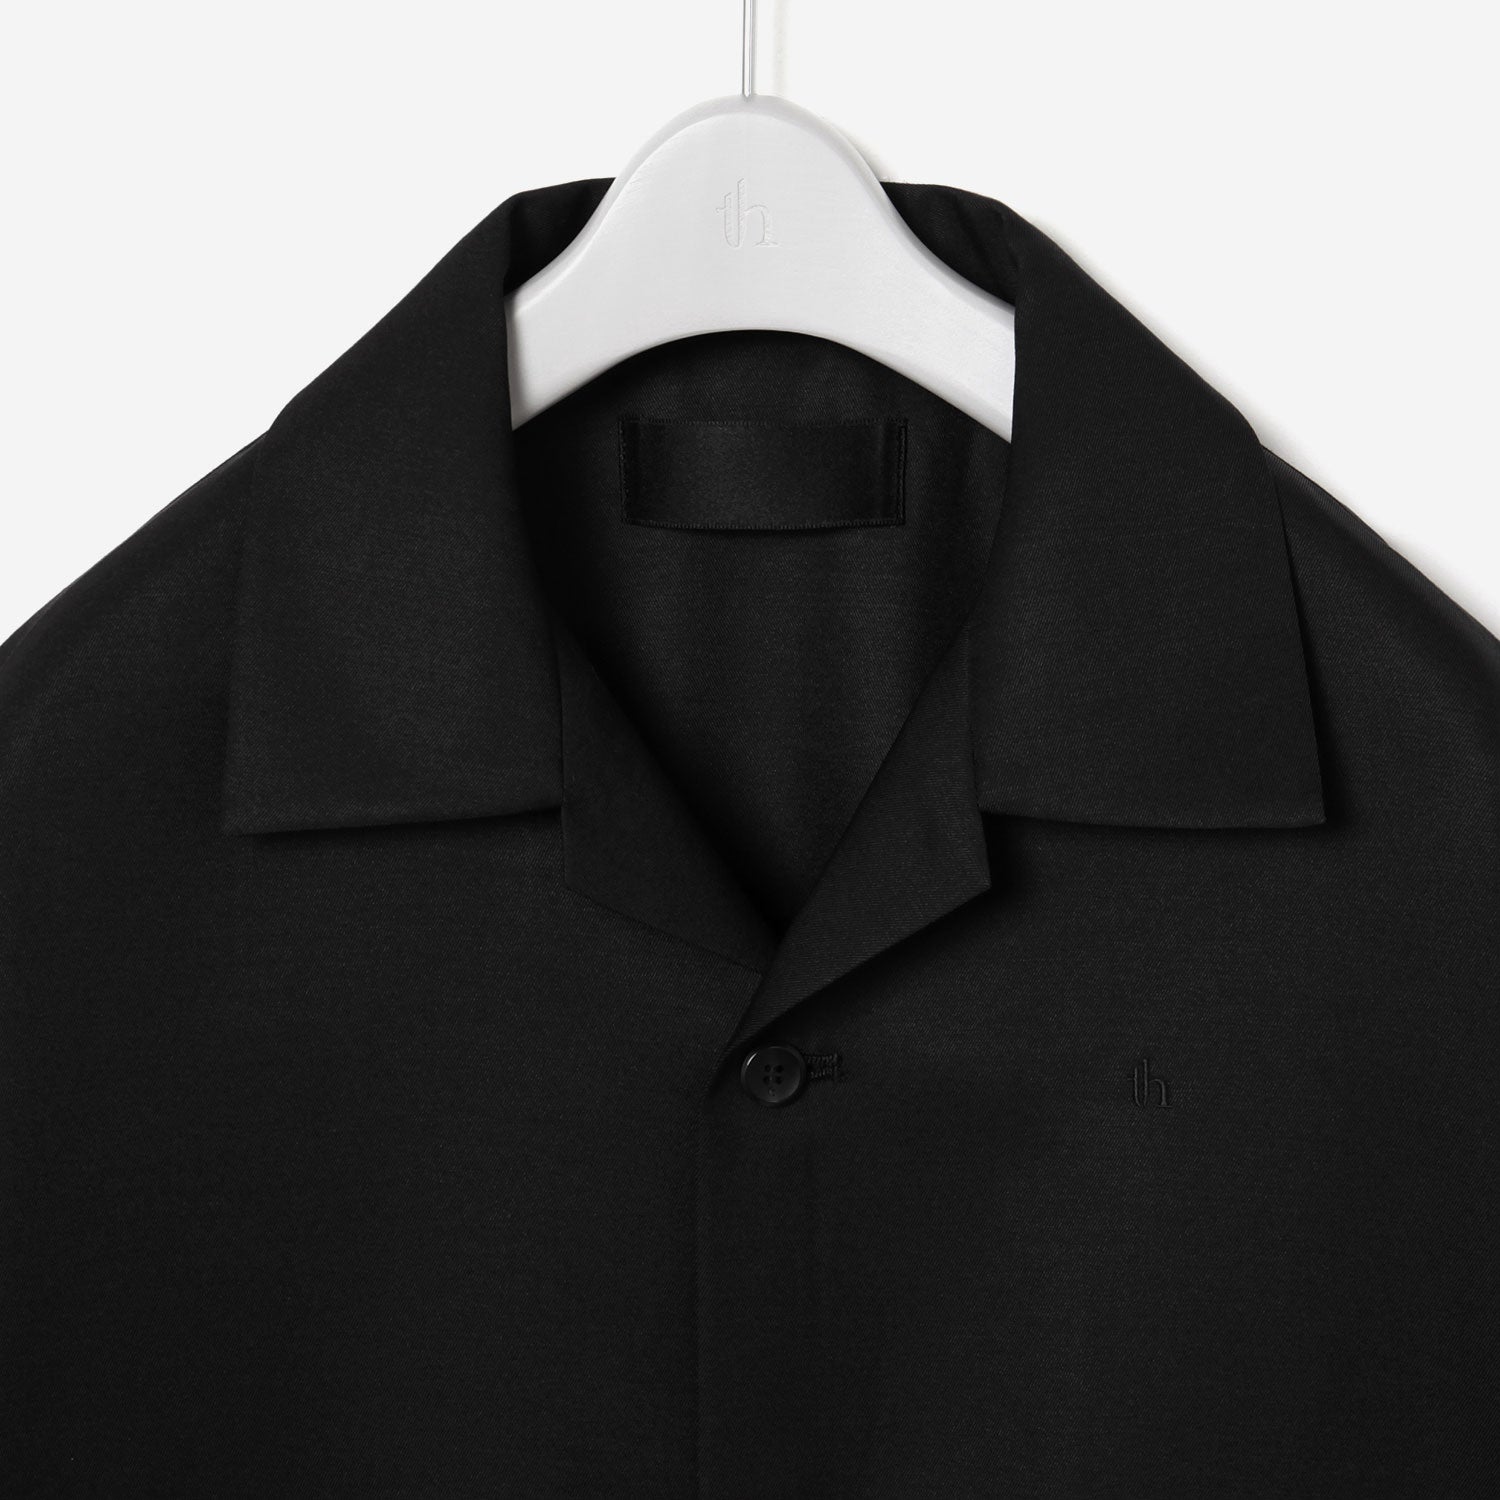 Open collar Shirt / black